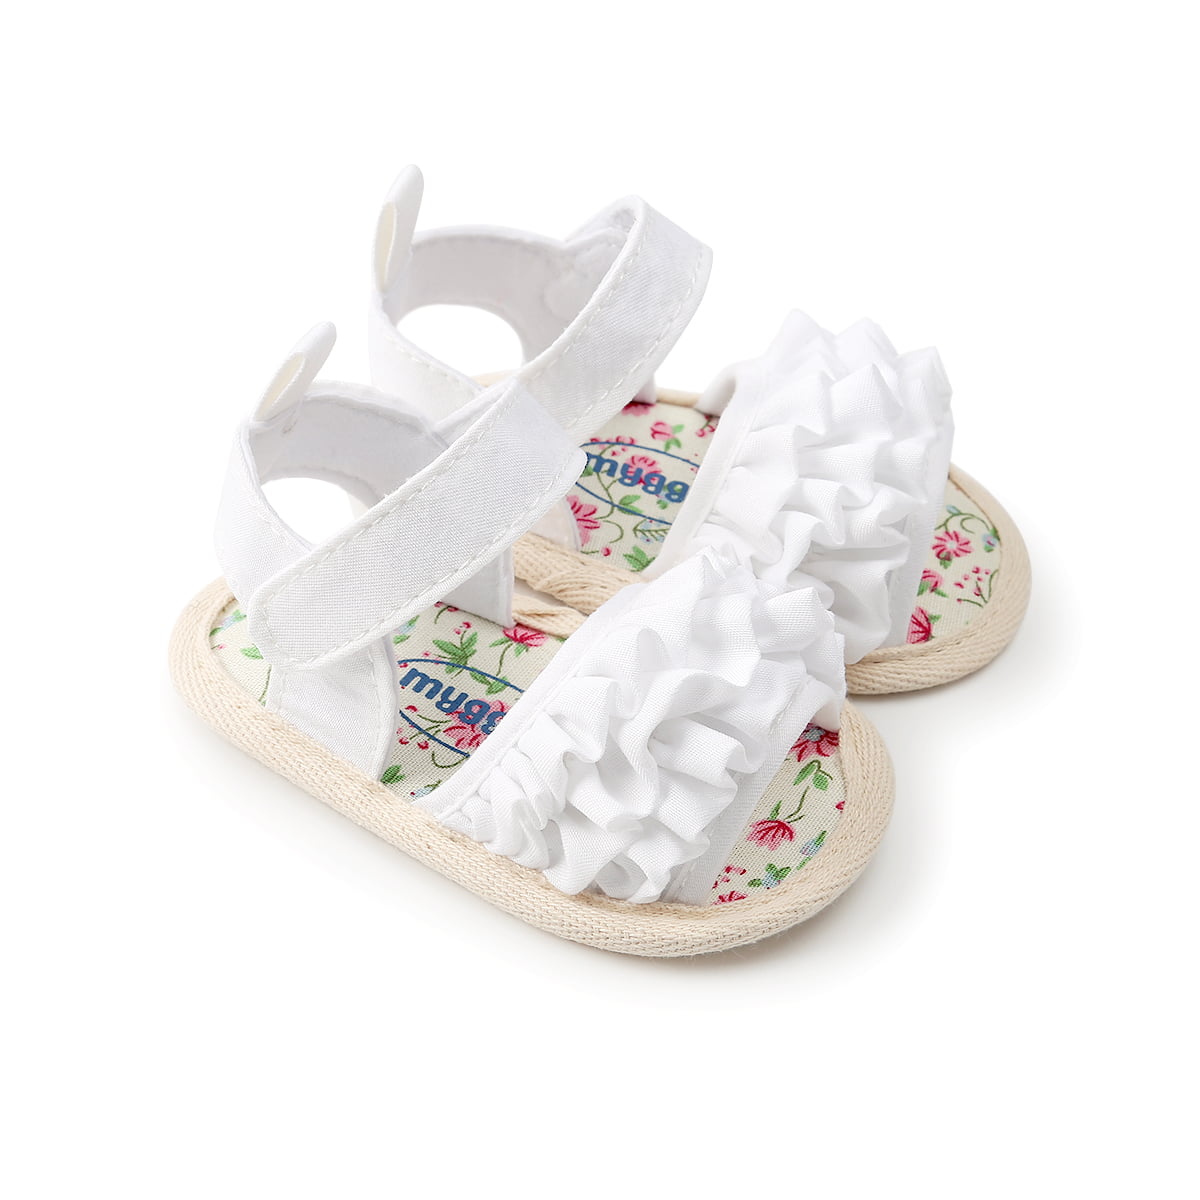 KIDSUN Girls Sandals Summer Soft Rubber Sole Pearl Flower Sweetheart Flat Shoes Toddler/Little Kid 